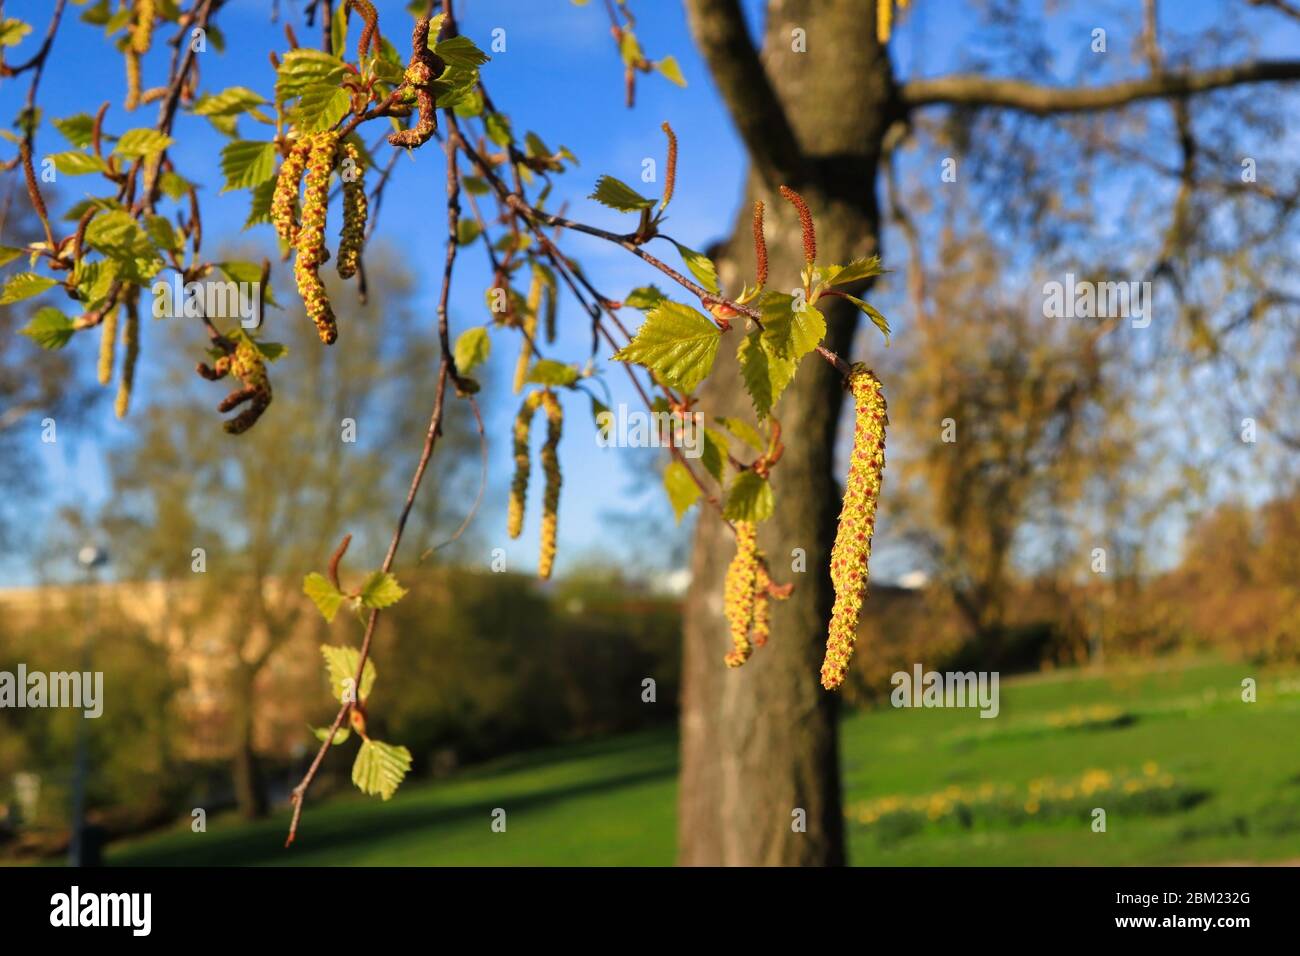 Alberi di betulla (Betula) fioriscono o cetrioli e foglie verdi in primavera contro il paesaggio del parco. L'allergia al polline di betulla è una comune allergia stagionale. Foto Stock